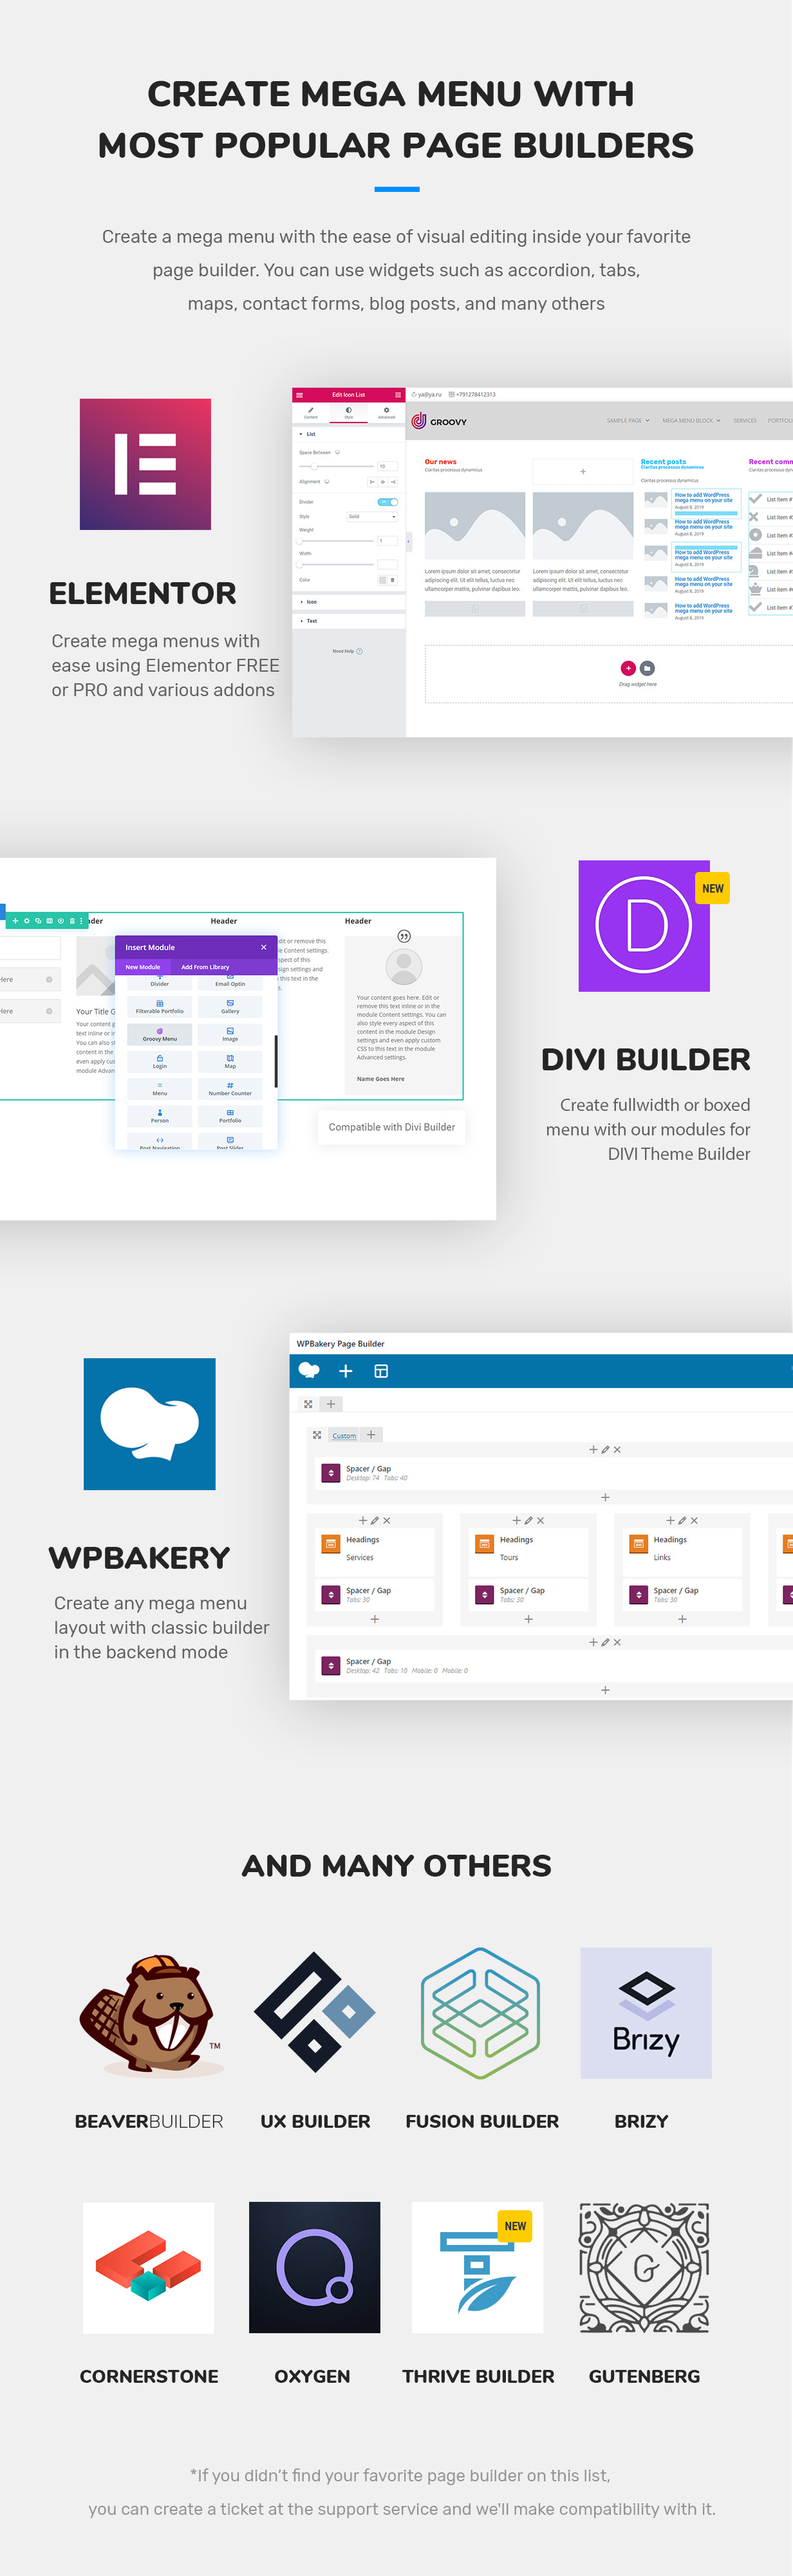 Los creadores de páginas compatibles con el mega menú Groovy son un tema DIVI, Elementor Free y PRO, WPBakery, Brizy, Oxygen, Theme Fusion, Gutenberg, Beaver Builder, UX Builder de Flatsome, Cornerstone, Thrive Themes Builder 2021